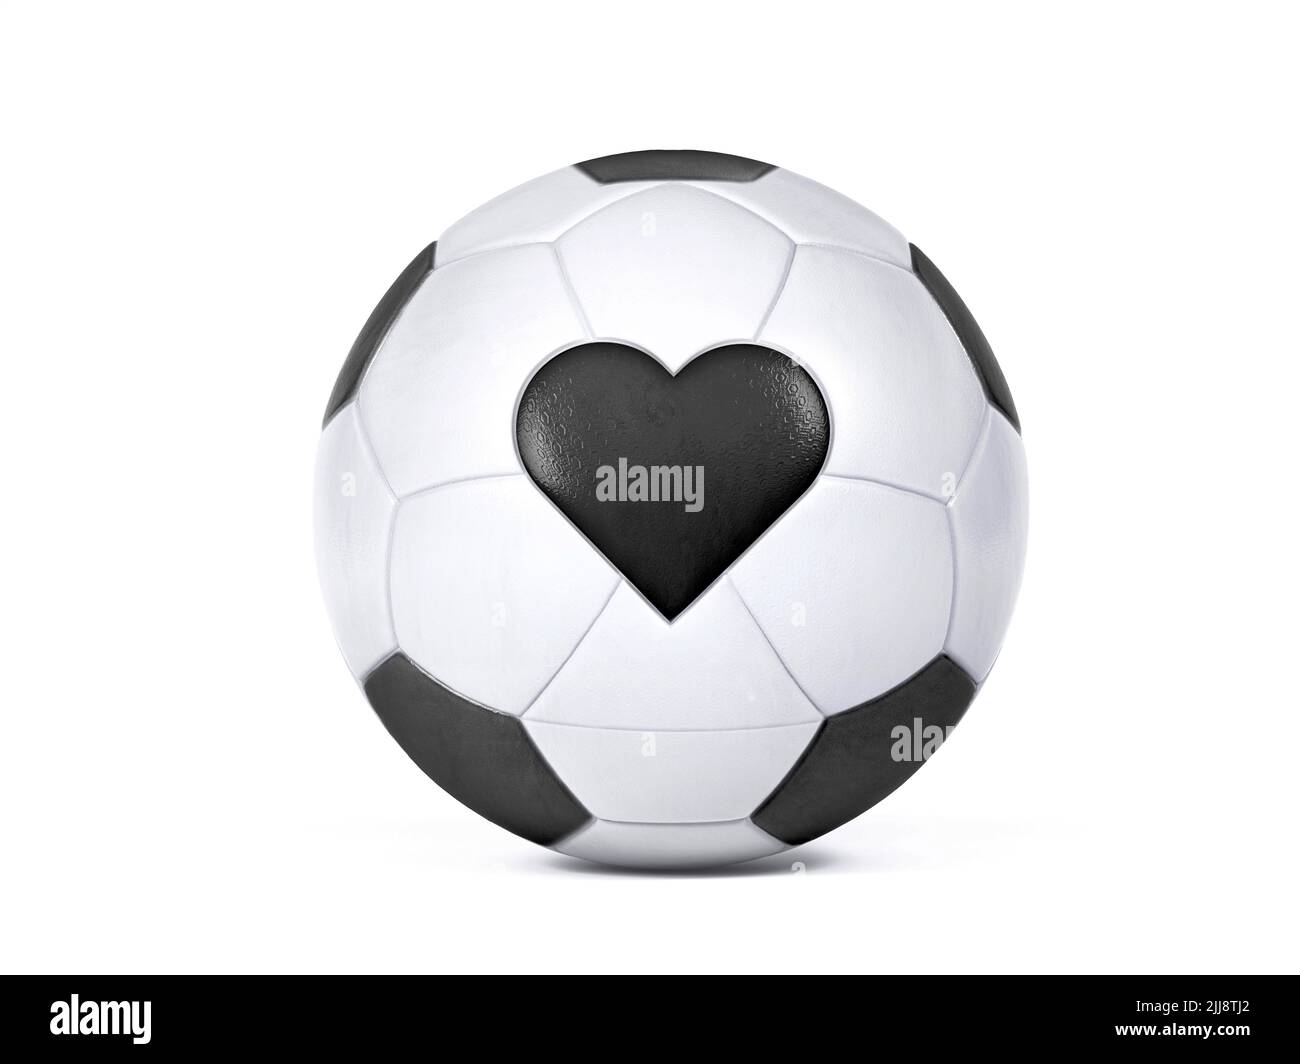 Ballon de football blanc isolé avec drapeau noir en forme de cœur. Centré sur un arrière-plan blanc avec ombre portée en haute résolution. 3D Ilustreti Banque D'Images